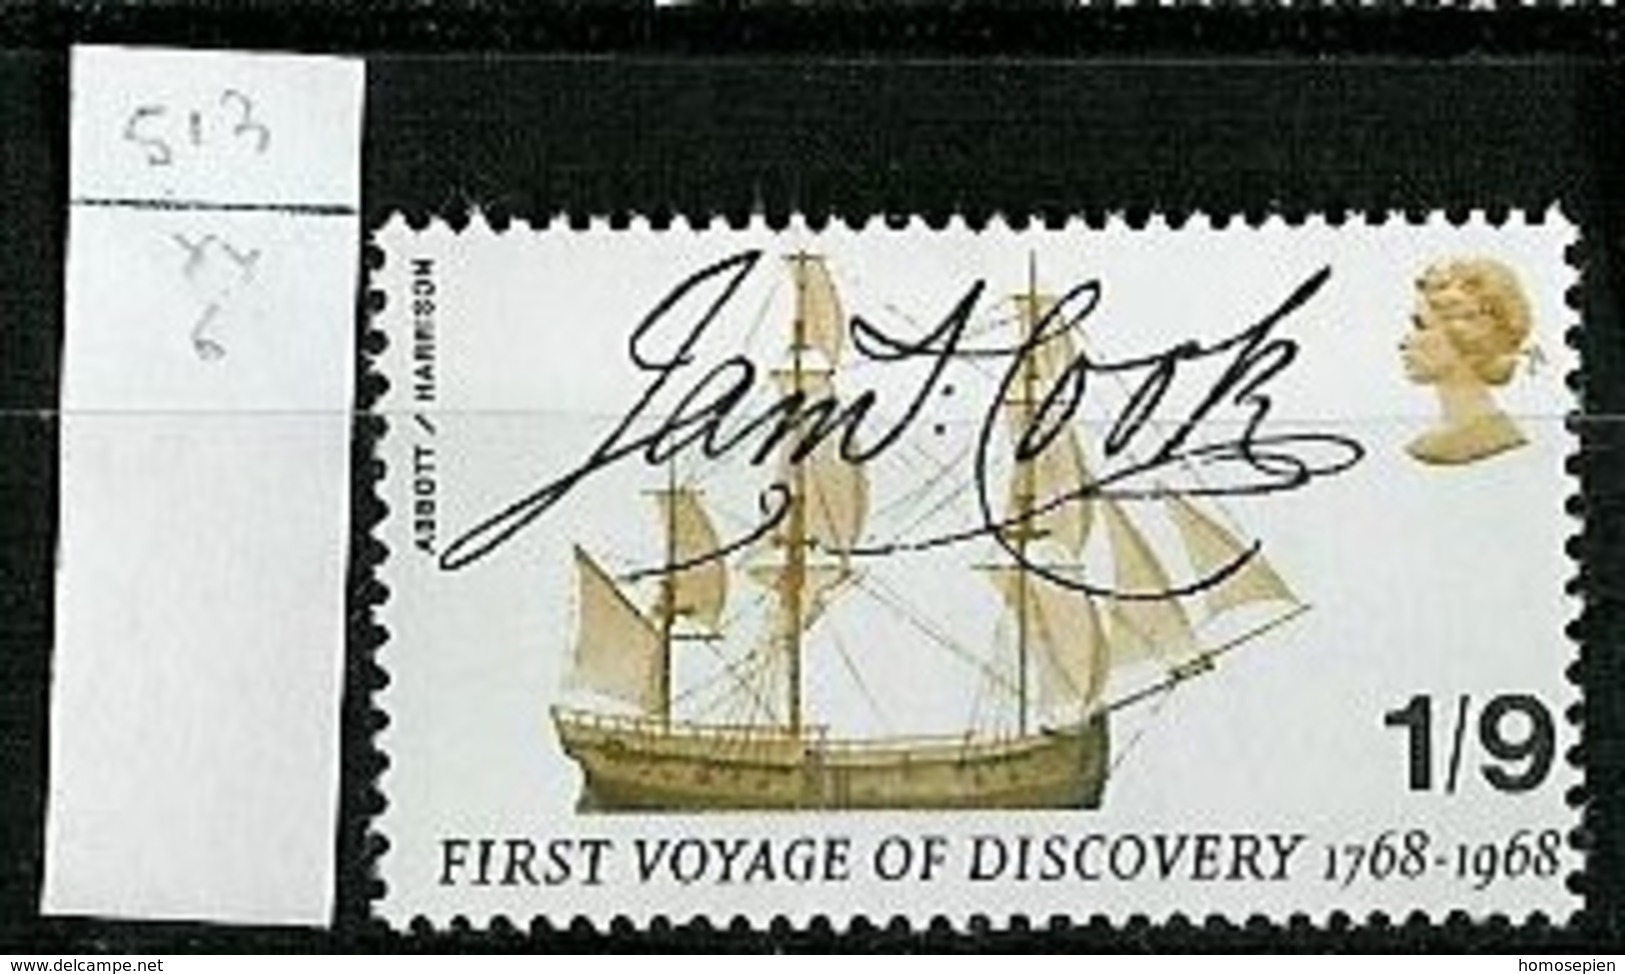 Grande Bretagne - Great Britain - Großbritannien 1968 Y&T N°513 - Michel N°488 (o) - 1/9 Bateau Endeavour - Used Stamps